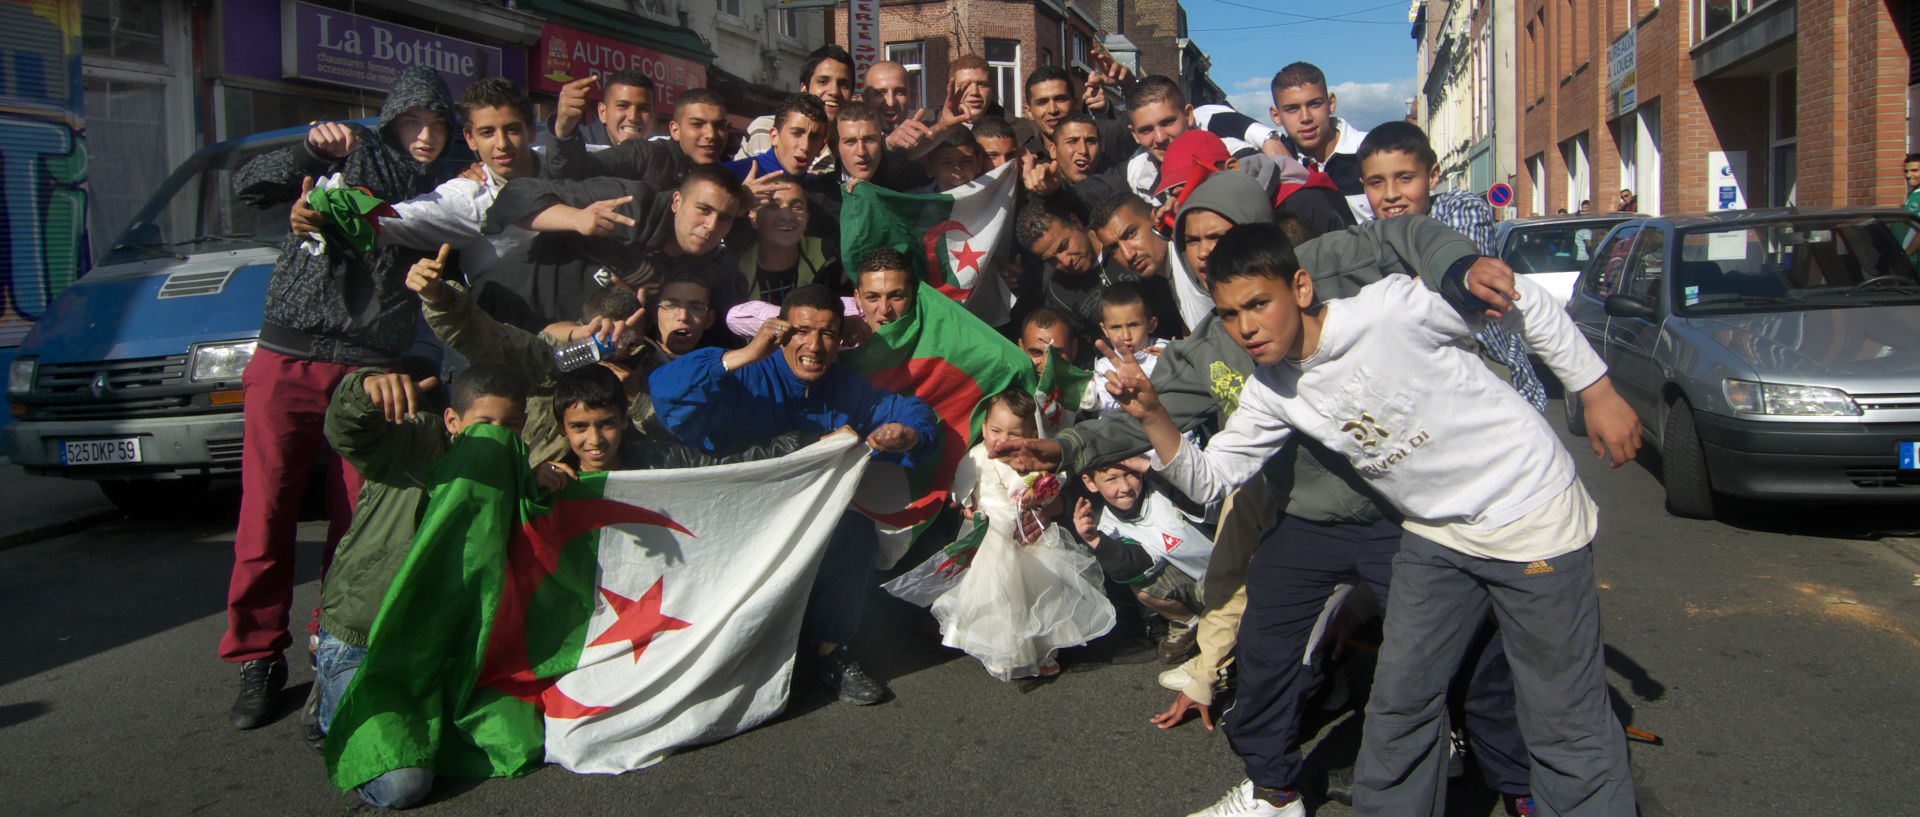 Photo de scène de rue, après la victoire de l'Algérie sur la Zambie, en football, Roubaix, Grande Rue.